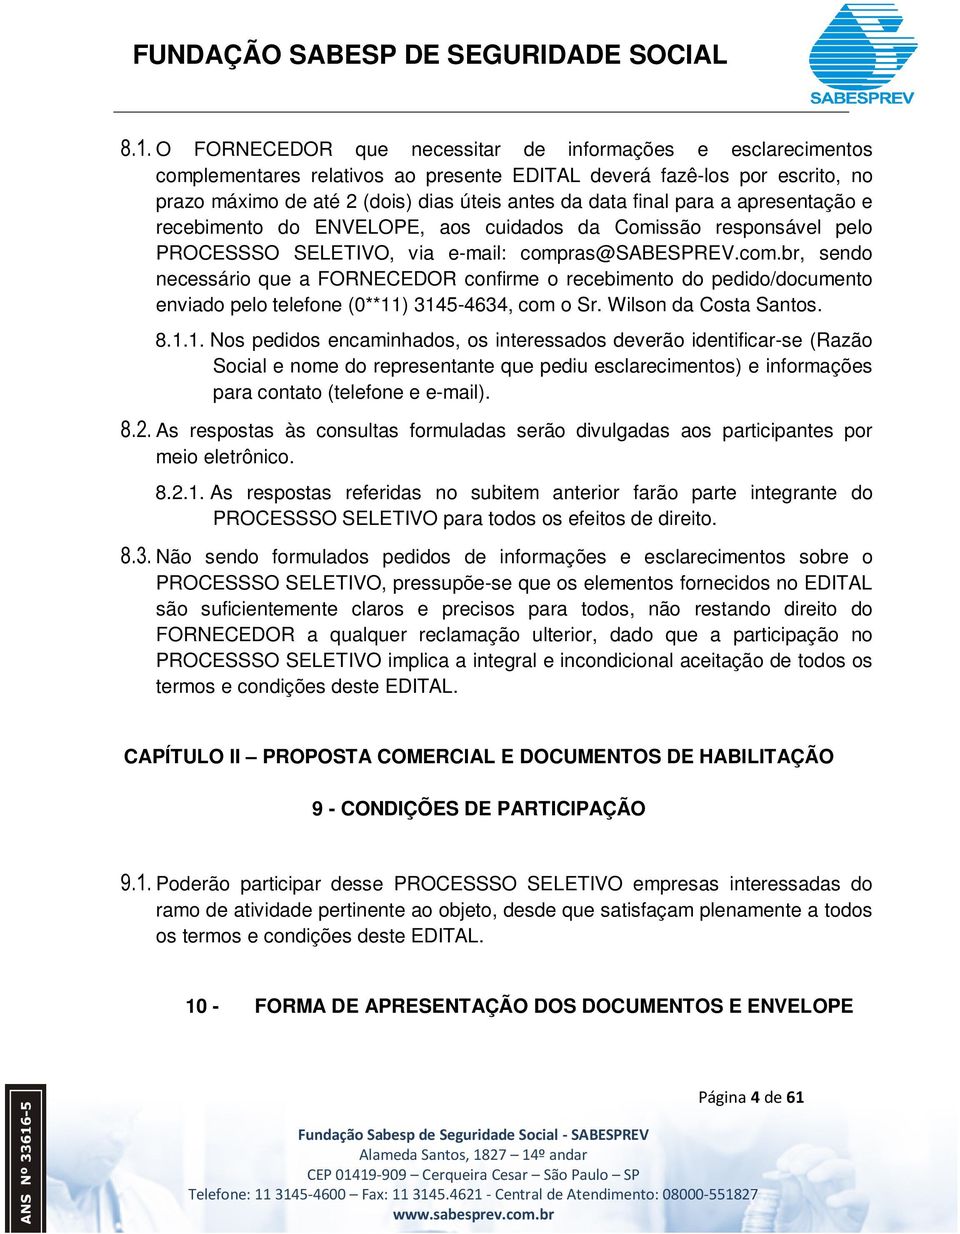 ras@sabesprev.com.br, sendo necessário que a FORNECEDOR confirme o recebimento do pedido/documento enviado pelo telefone (0**11